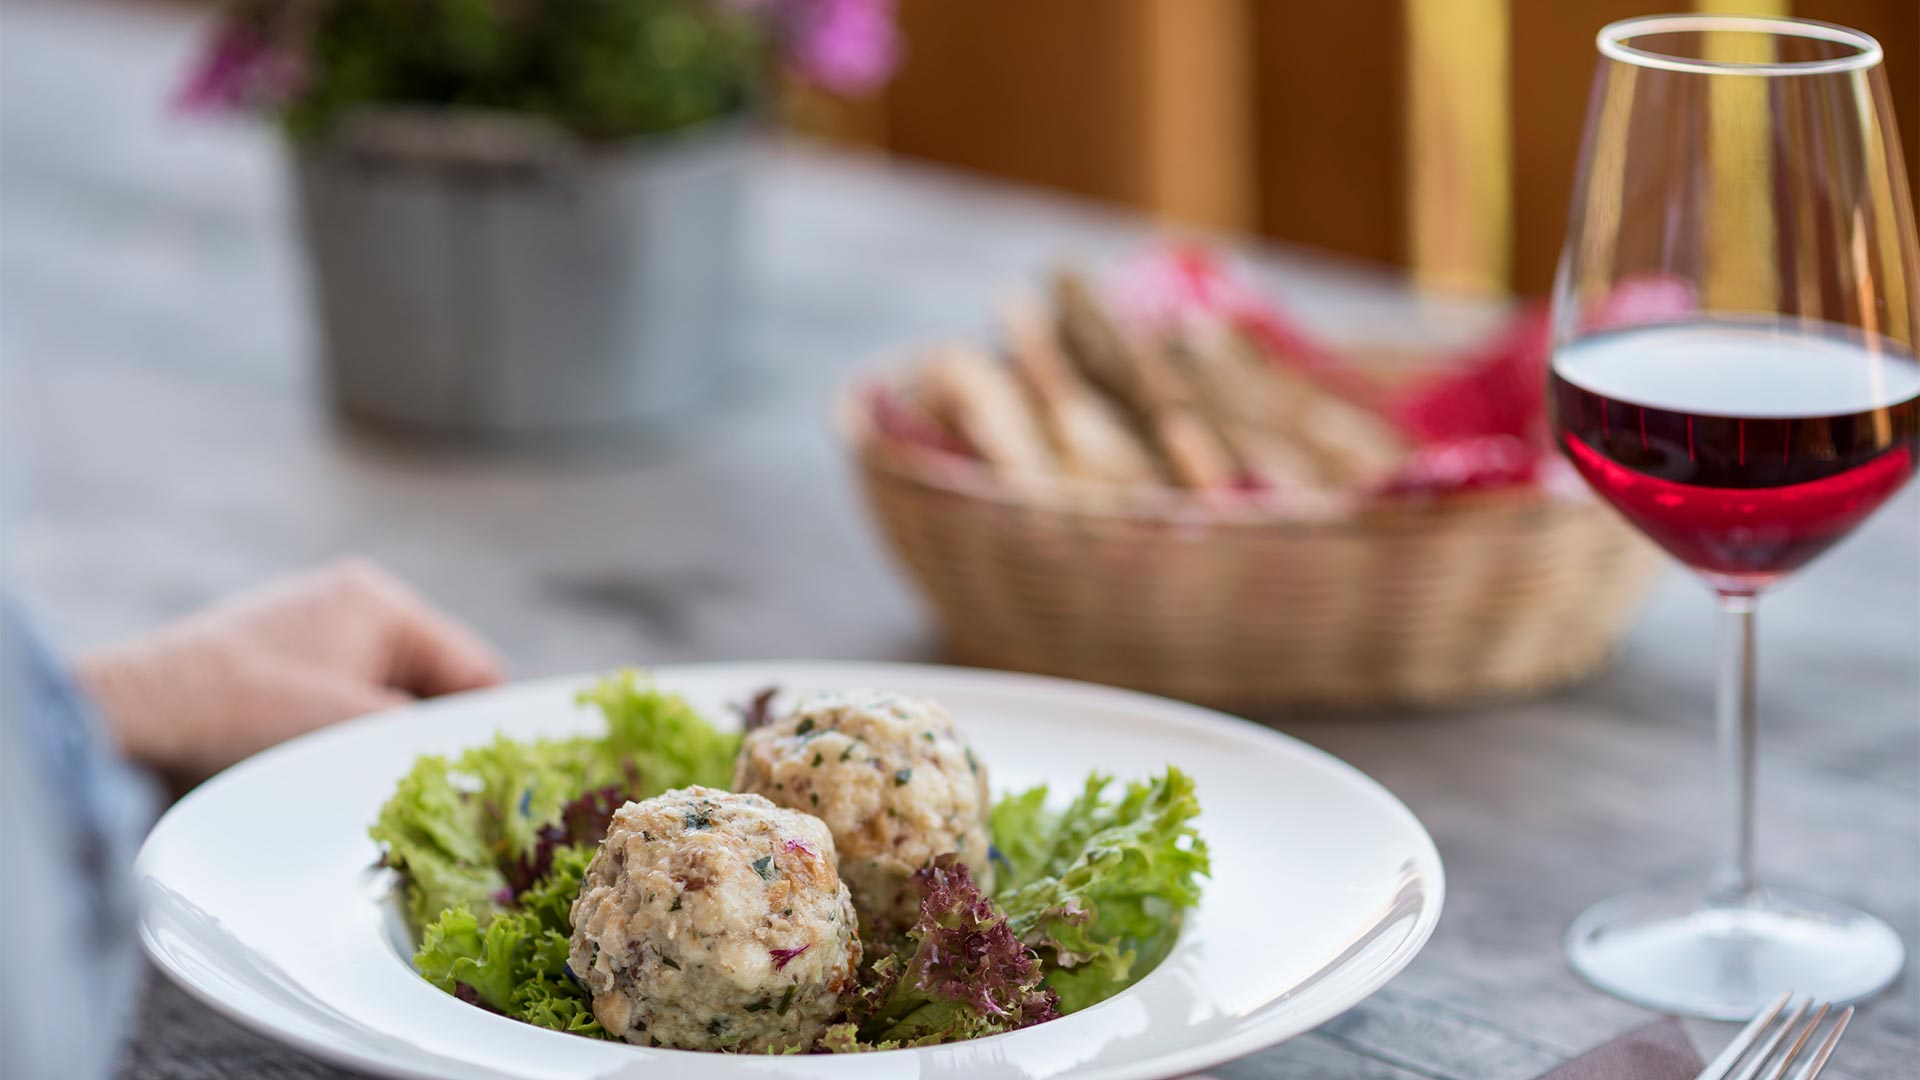 Auf dem Tisch steht ein typisches Tiroler Gericht mit Knödeln und Salat als Beilage, dazu ein Korb mit Weißbrot und ein Glas Rotwein.